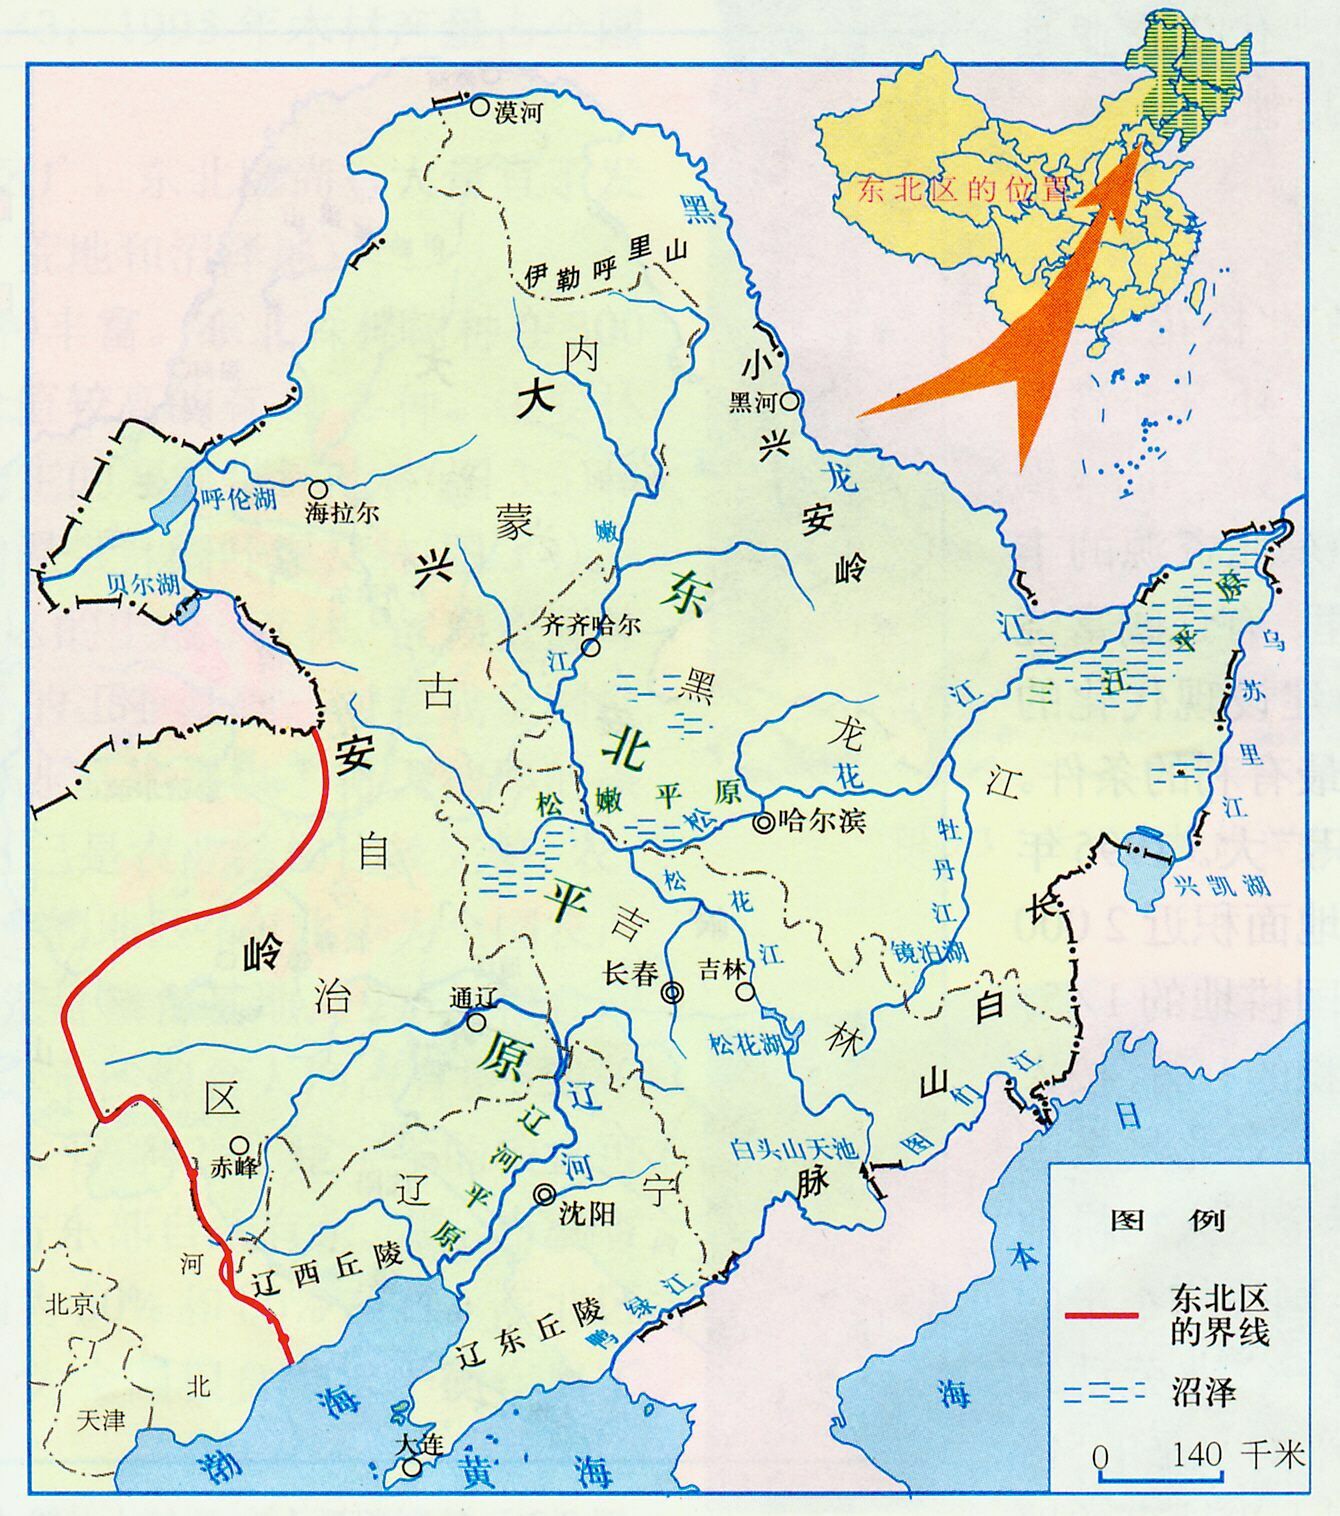 毗邻俄罗斯,朝鲜,韩国,日本等国边境.图片